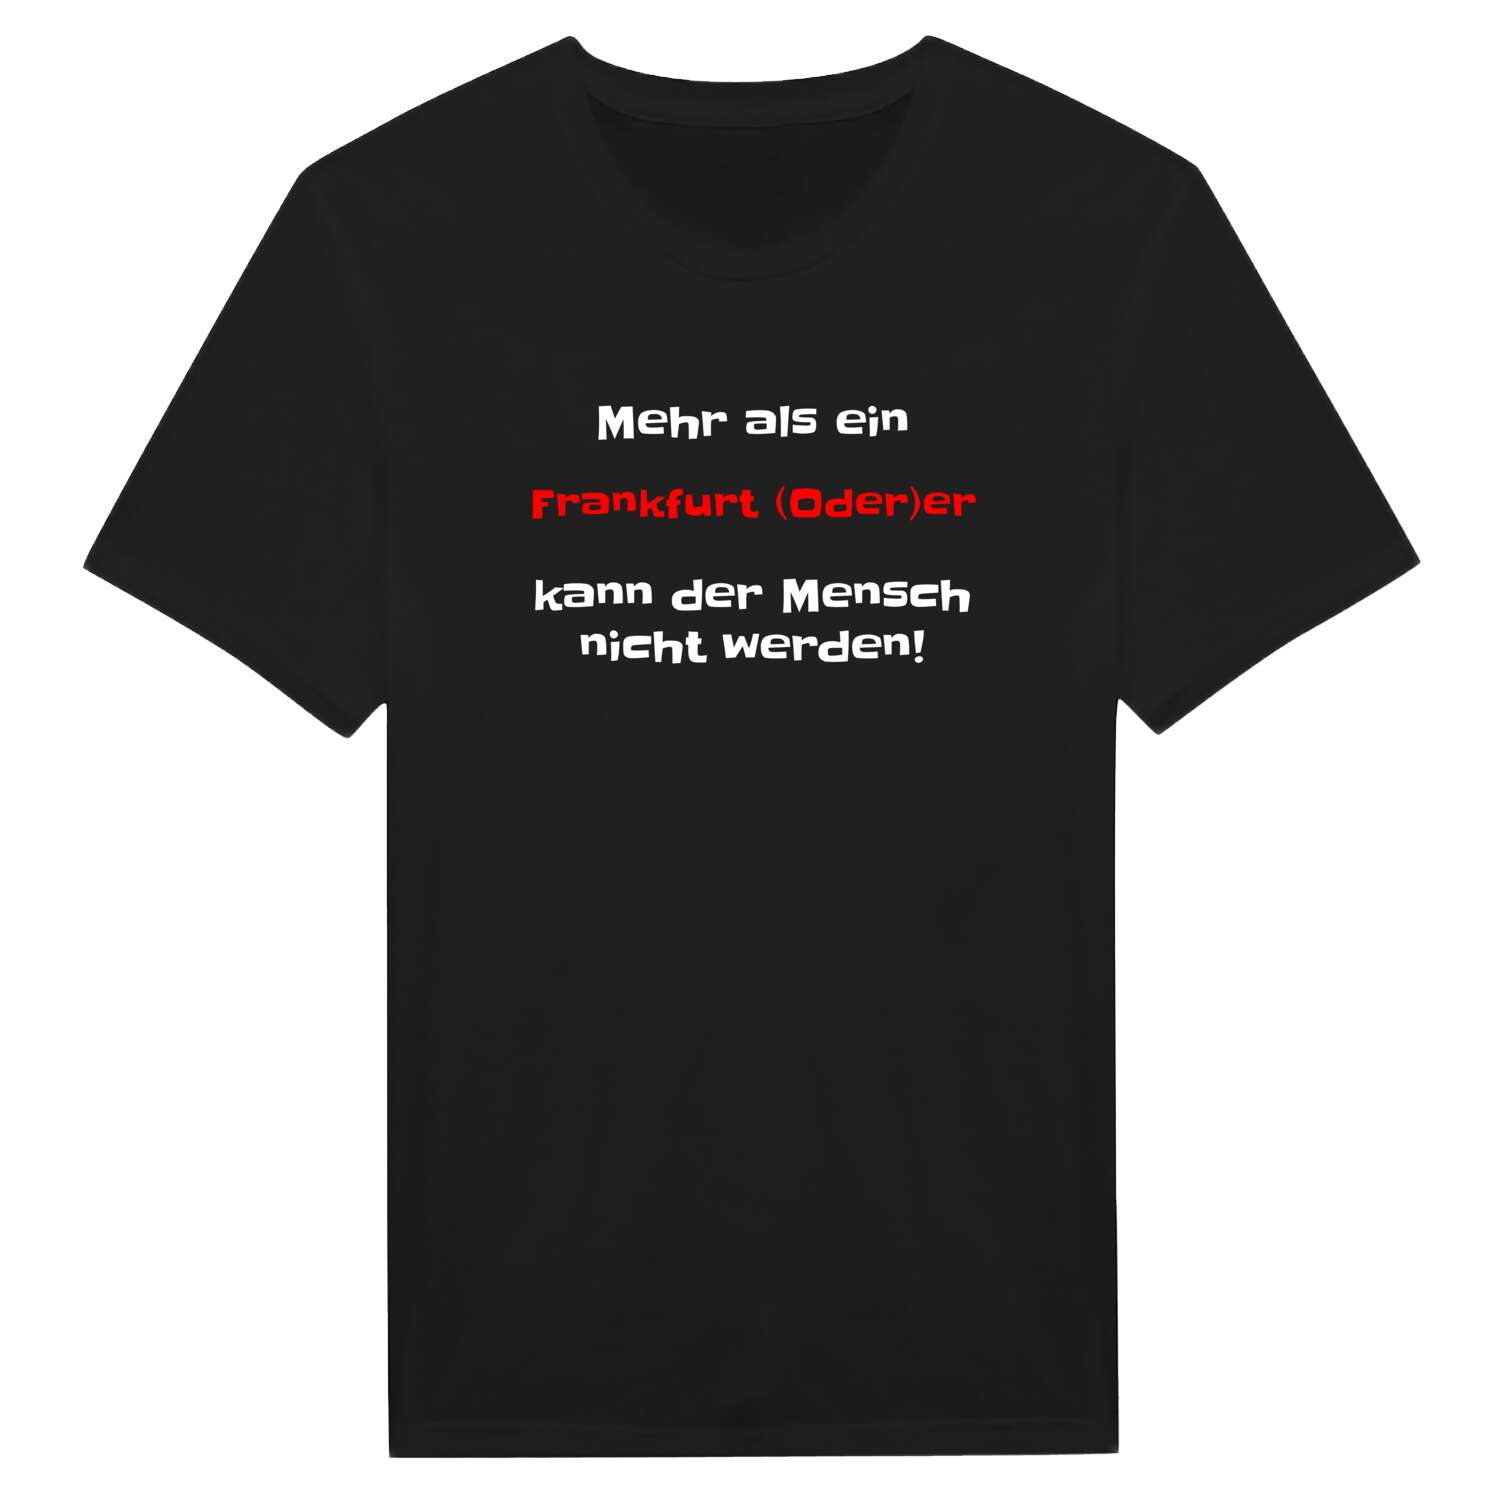 Frankfurt (Oder) T-Shirt »Mehr als ein«